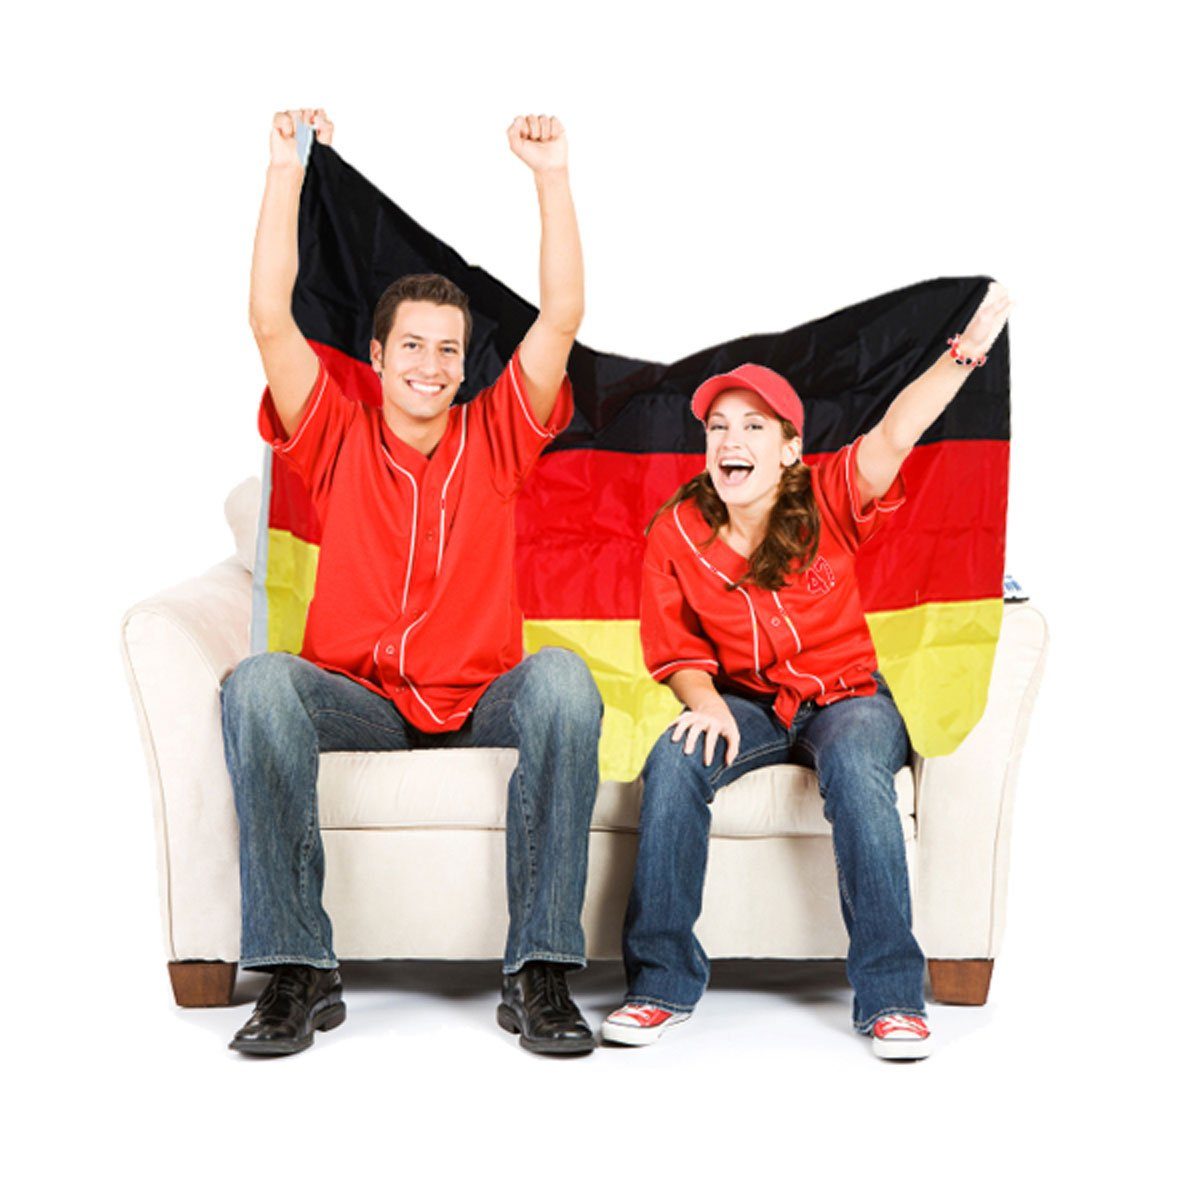 Deutschland Fanartikel EM, WM, Fußball, Handball, Eishockey